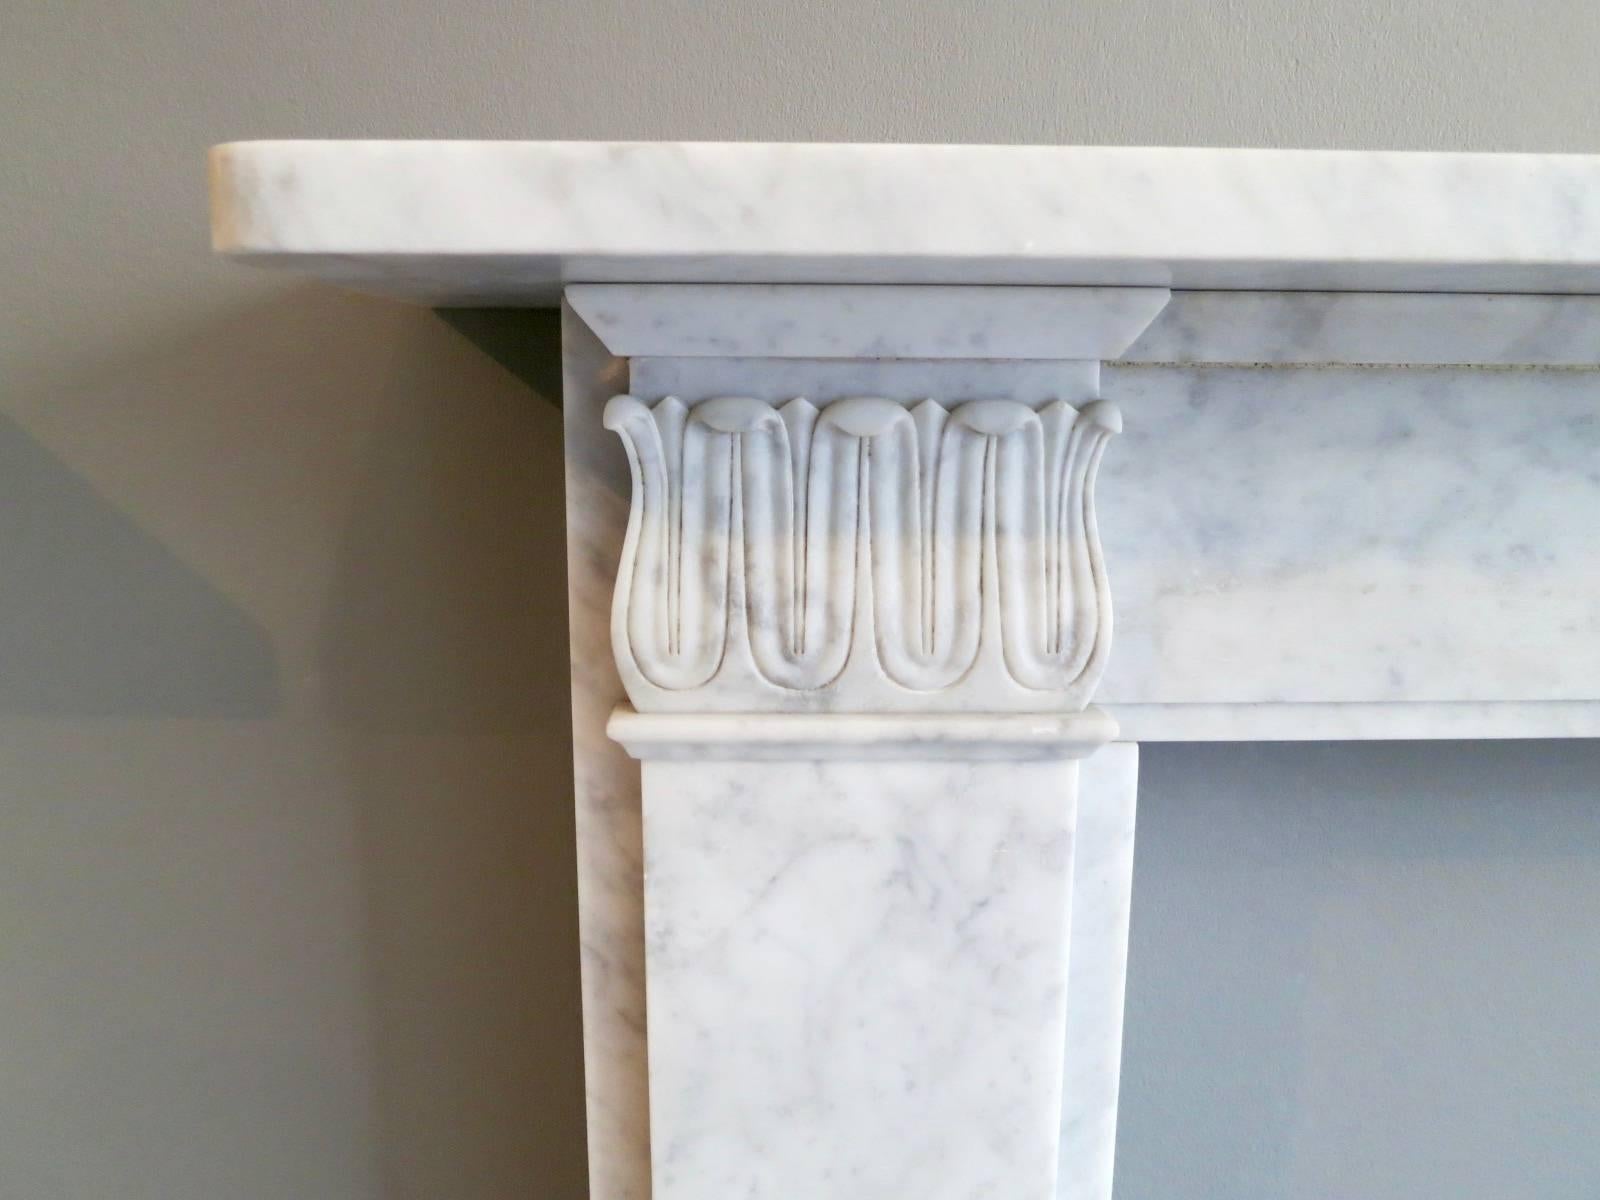 Une cheminée de style Regency légèrement vieillie en marbre de Carrare. Une pièce de reproduction de bonne qualité, disponible dans des tailles personnalisées et d'autres marbres.

Dimensions de l'ouverture 91,5cm x 91,5cm 